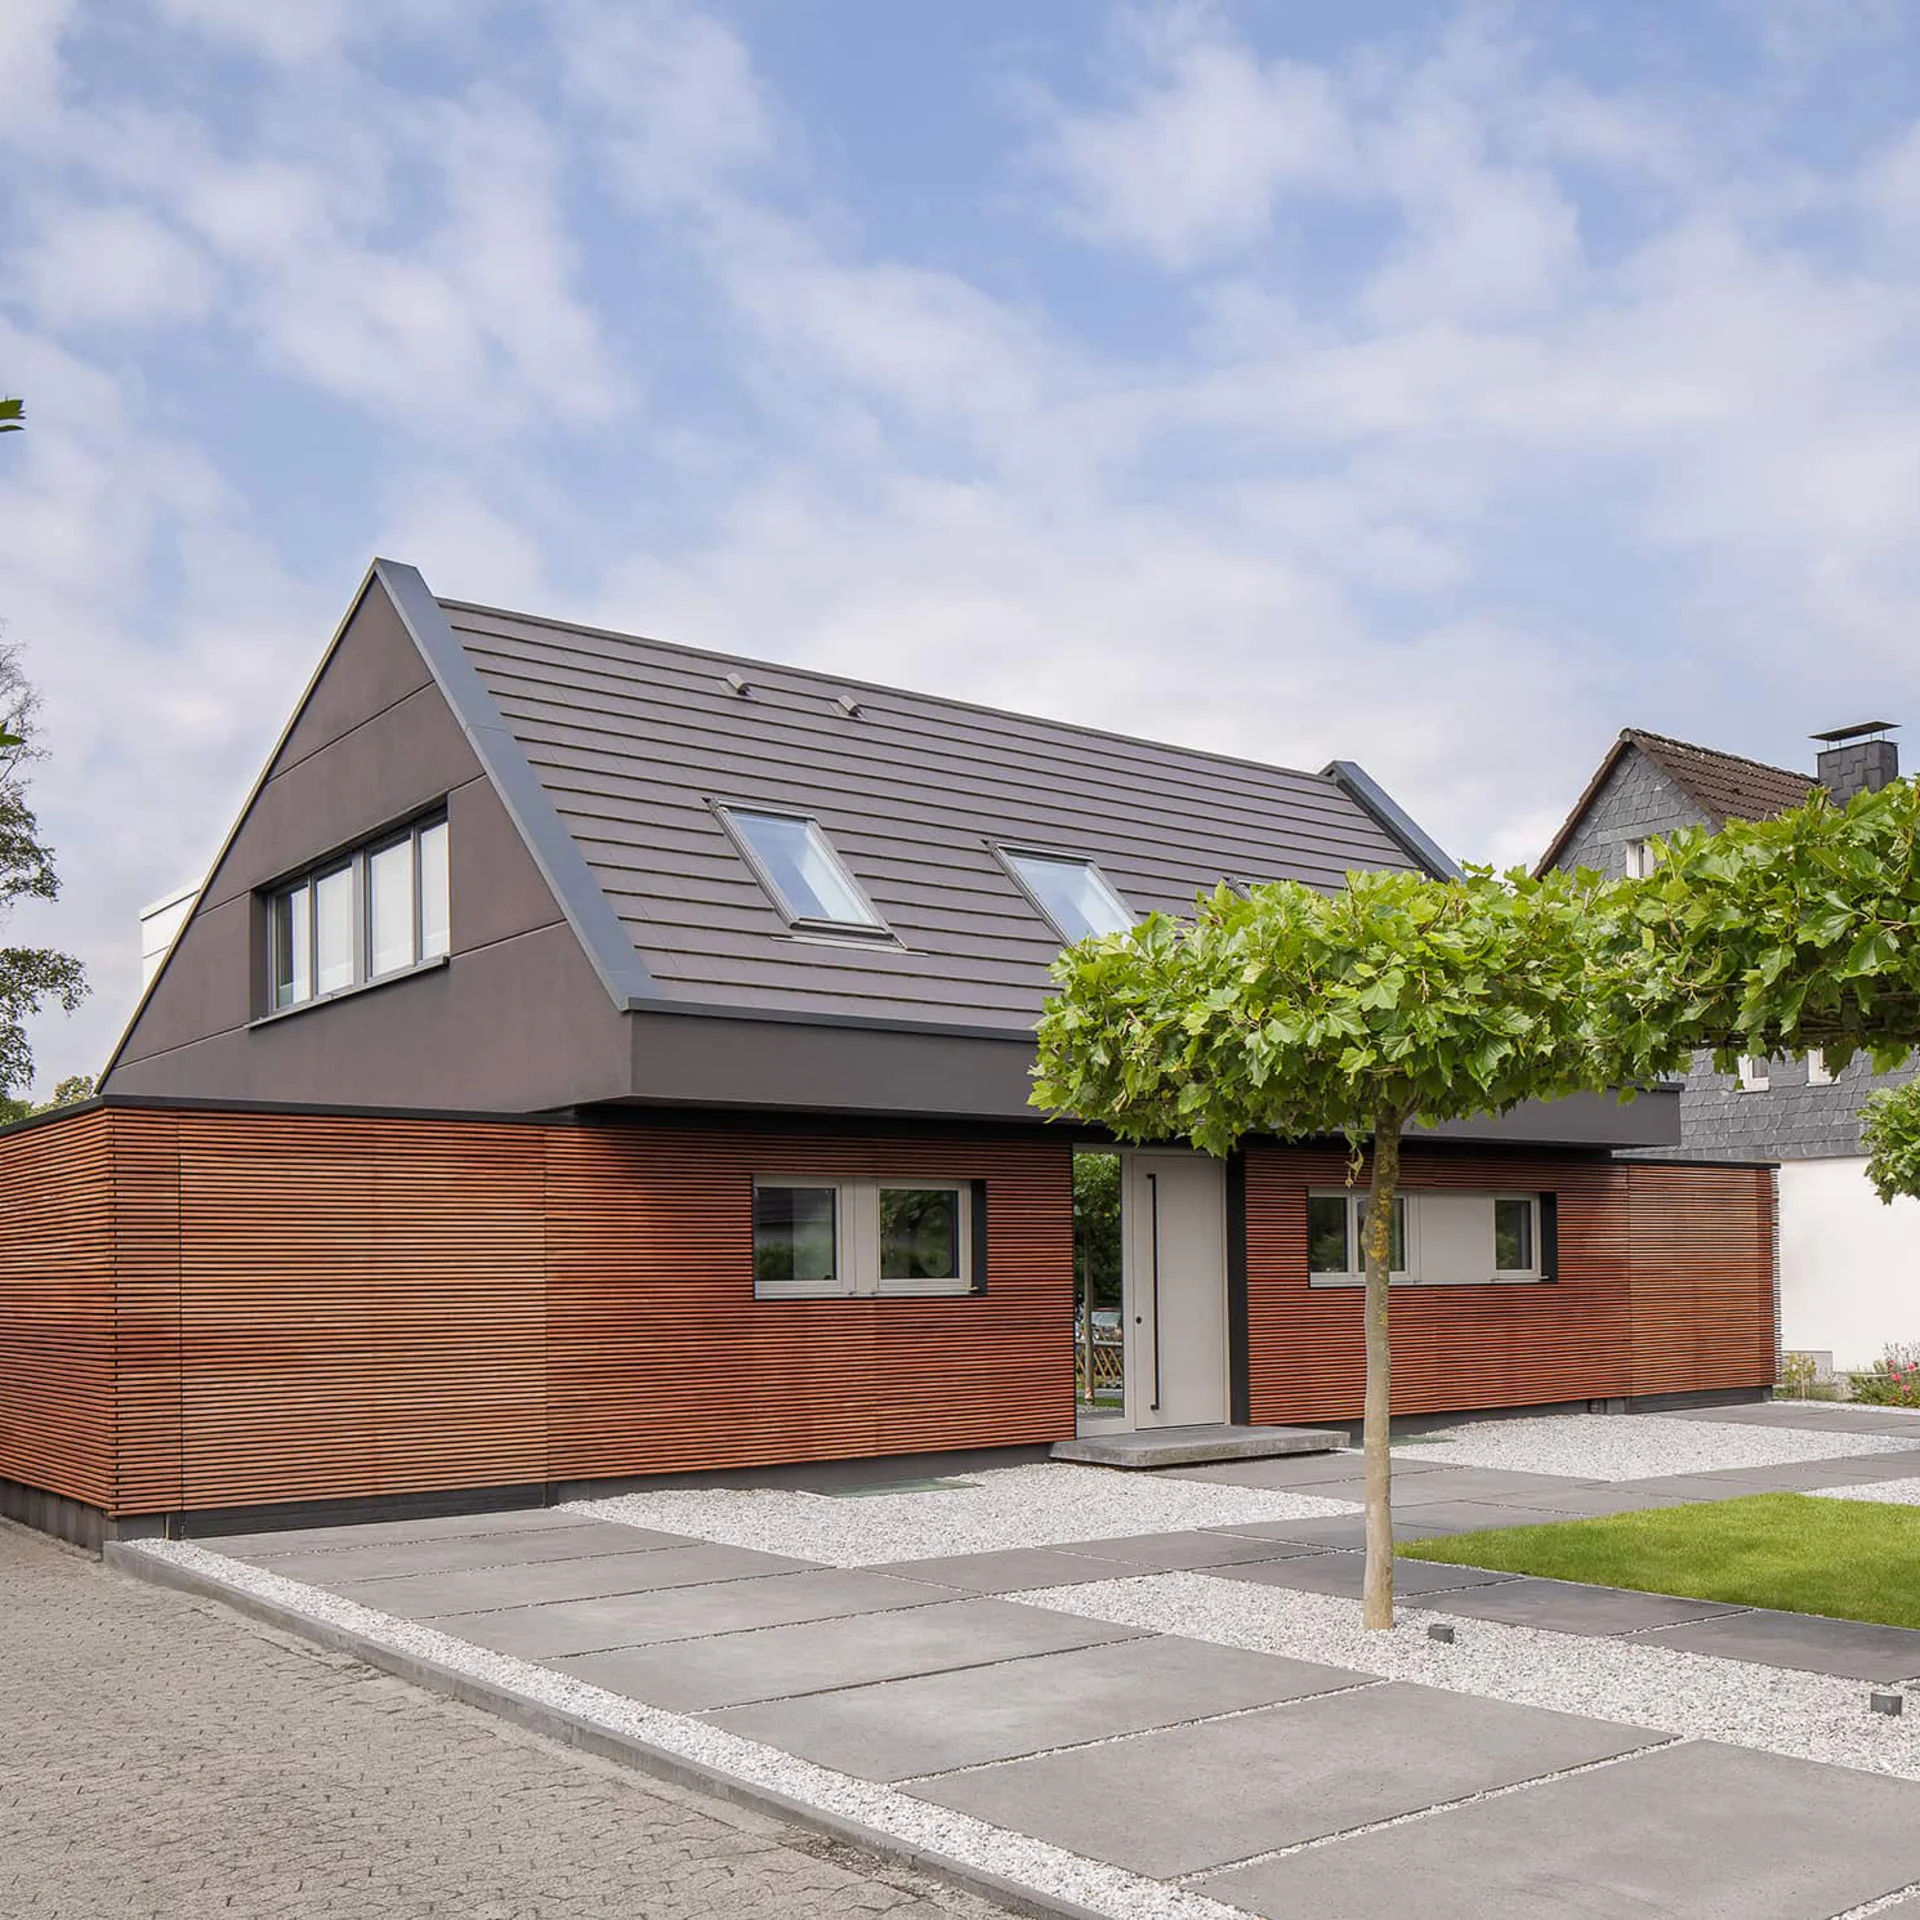 zweistöckiges Haus mit rötlicher Holzfassade und grauem Spitzdach